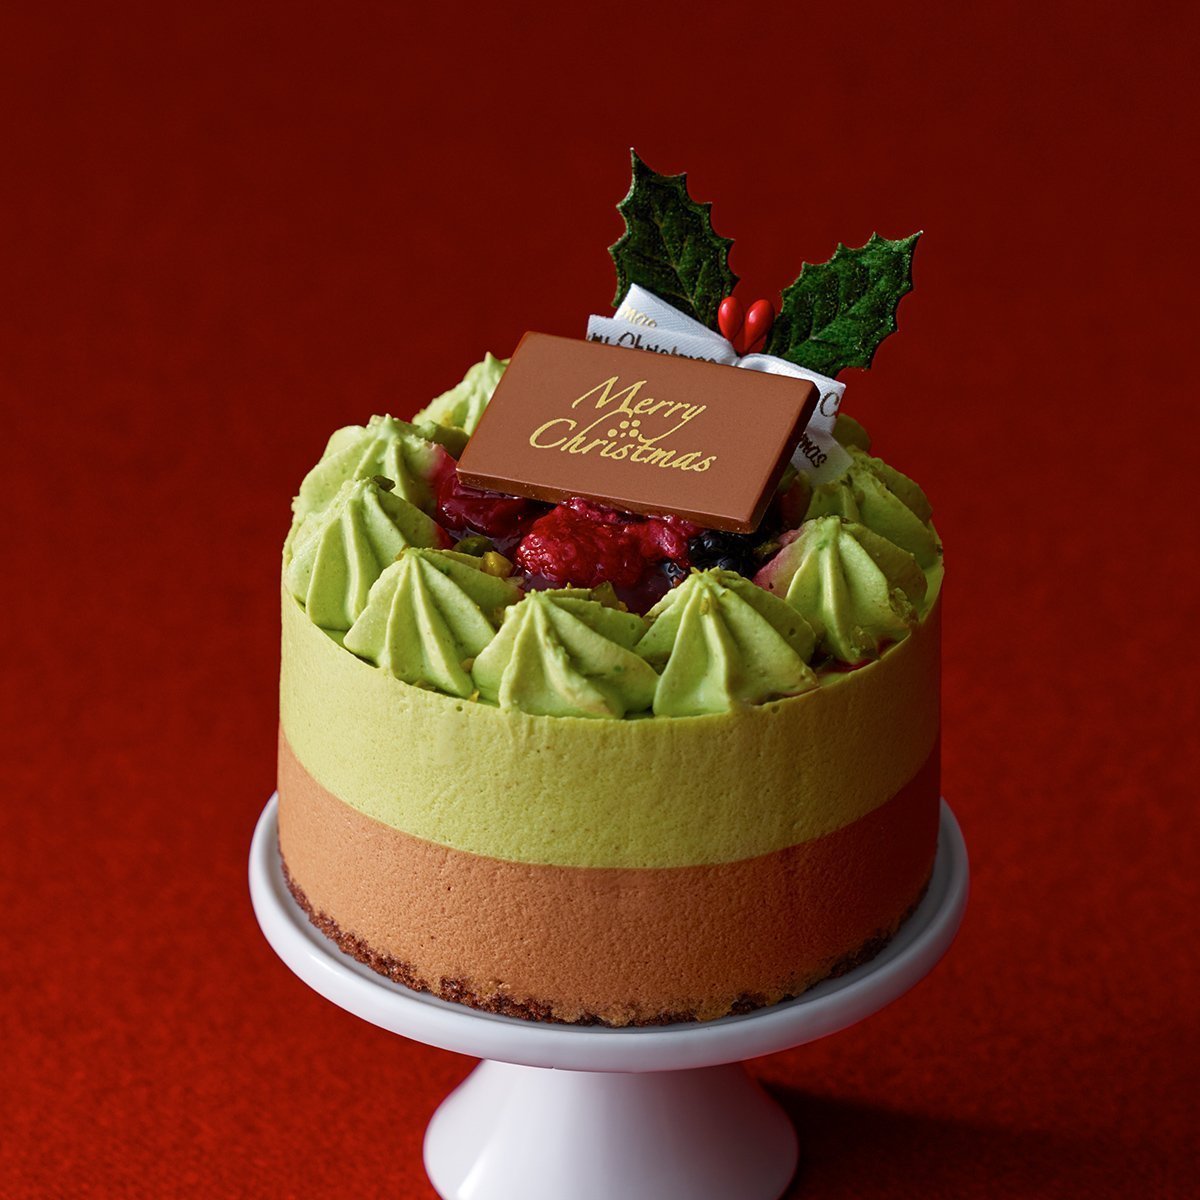 ルタオ Letao クリスマスケーキ サパン ド ノエル 3号直径9cm 1 2名用 チョコレートケーキ をネットで予約 クリスマスケーキ まだ間に合う ネットで予約して配達まで